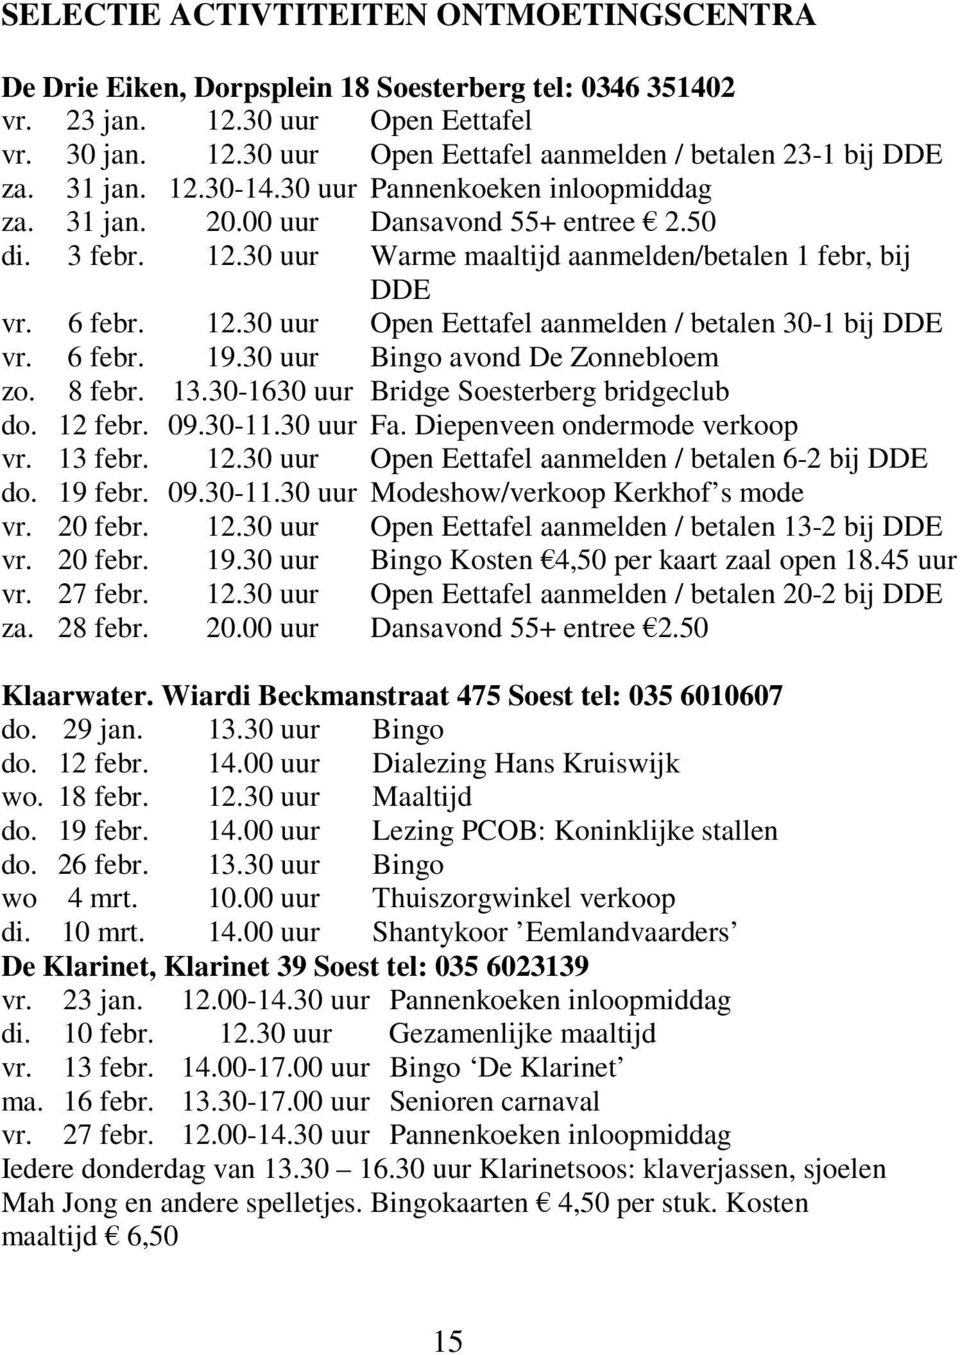 6 febr. 19.30 uur Bingo avond De Zonnebloem zo. 8 febr. 13.30-1630 uur Bridge Soesterberg bridgeclub do. 12 febr. 09.30-11.30 uur Fa. Diepenveen ondermode verkoop vr. 13 febr. 12.30 uur Open Eettafel aanmelden / betalen 6-2 bij DDE do.